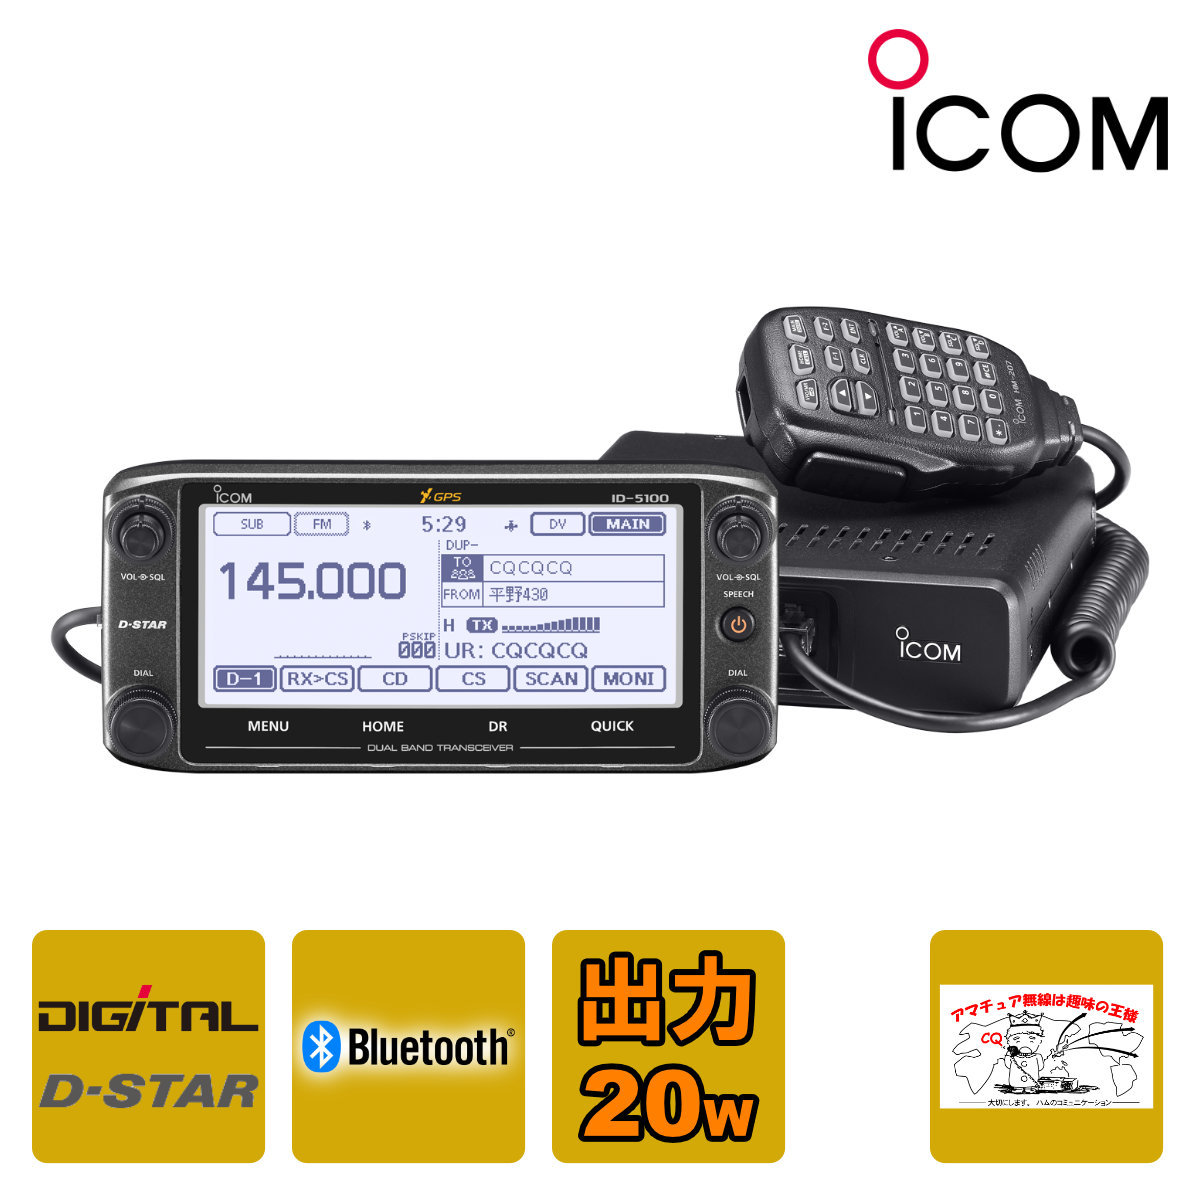  amateur radio ID-5100 #31 Icom 144/430MHz dual band digital 20W transceiver 